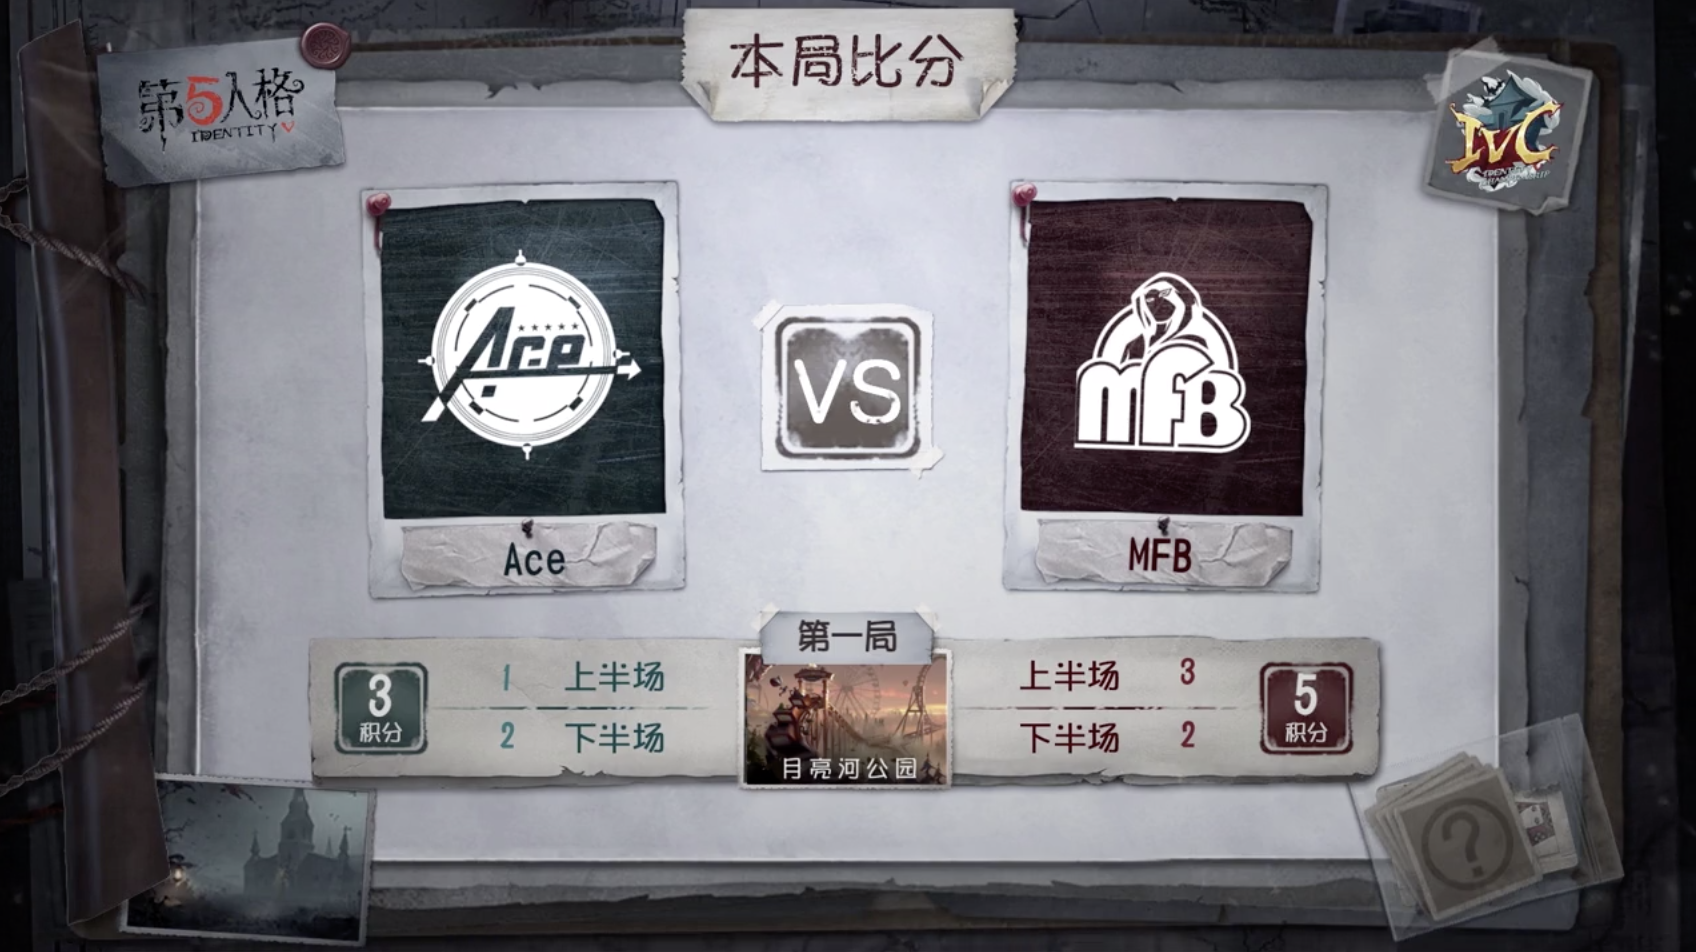 10月19日 Ace vs MFB小组赛BO3第一局